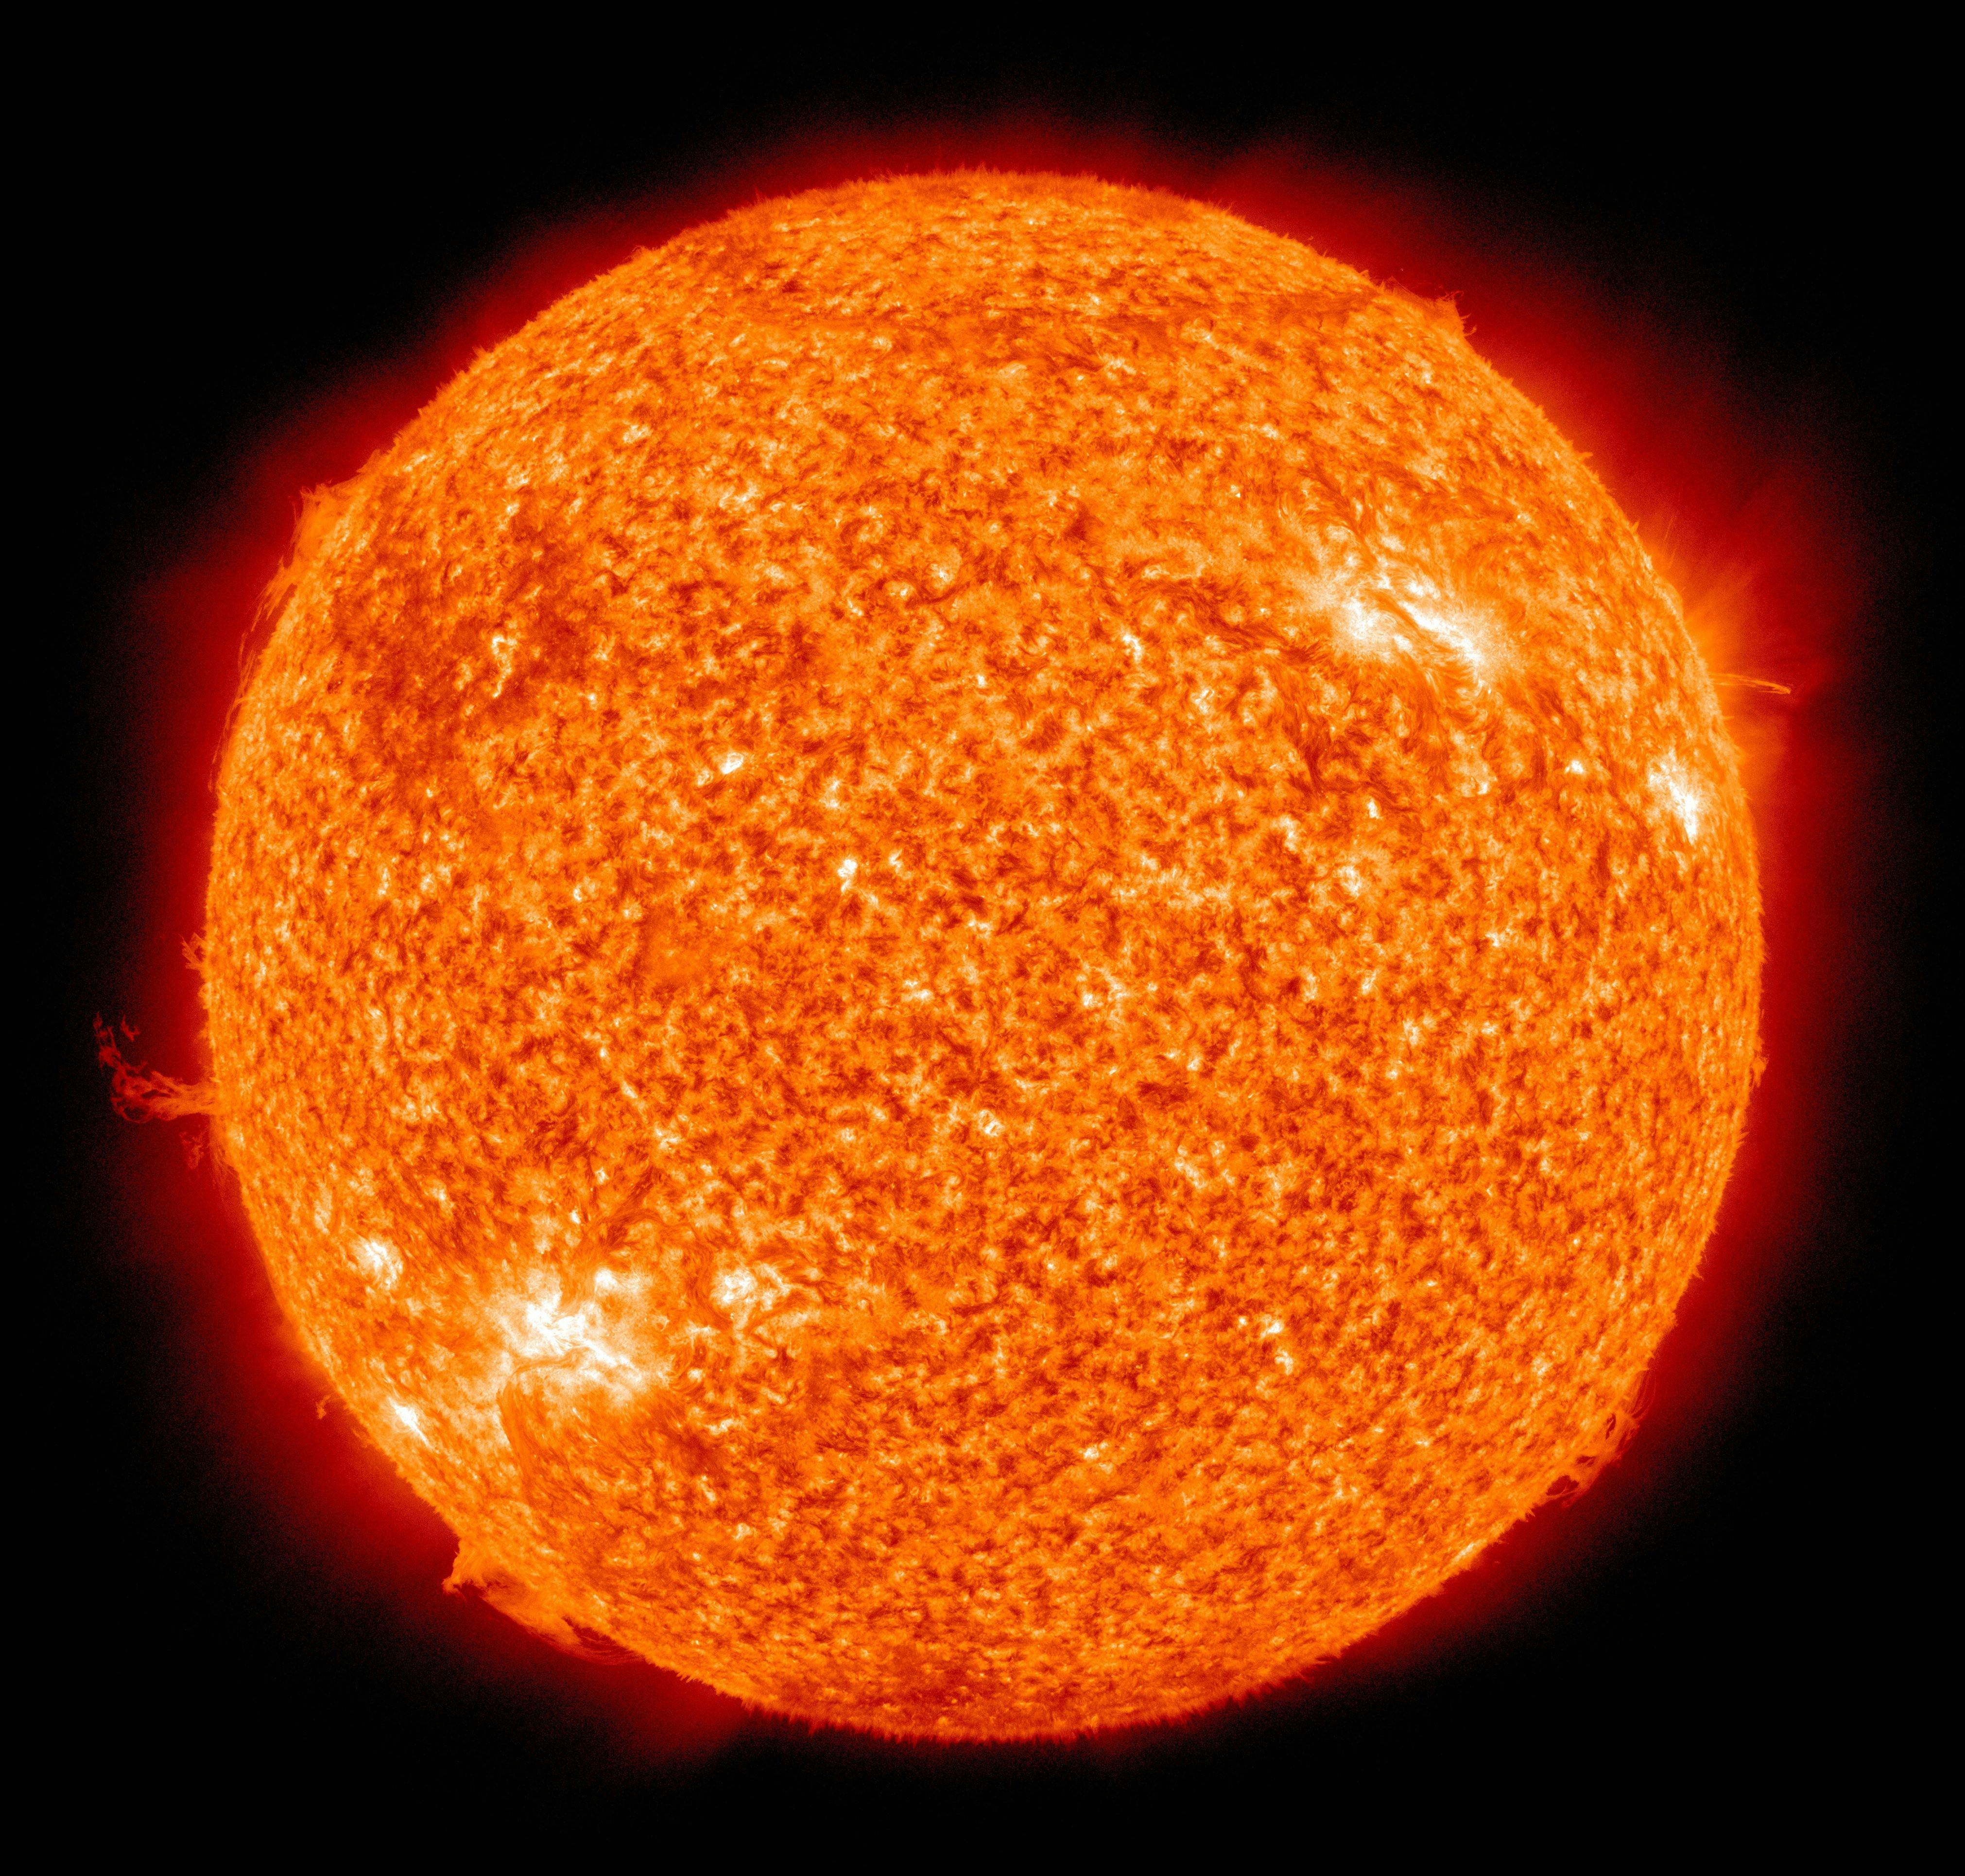 画像 太陽 画像 太陽 無料素材 No Date 18 10 17 11 35 27 毎日更新 ふりすと は無料の動画 写真 音楽や効果音の素材ダウンロードサイト